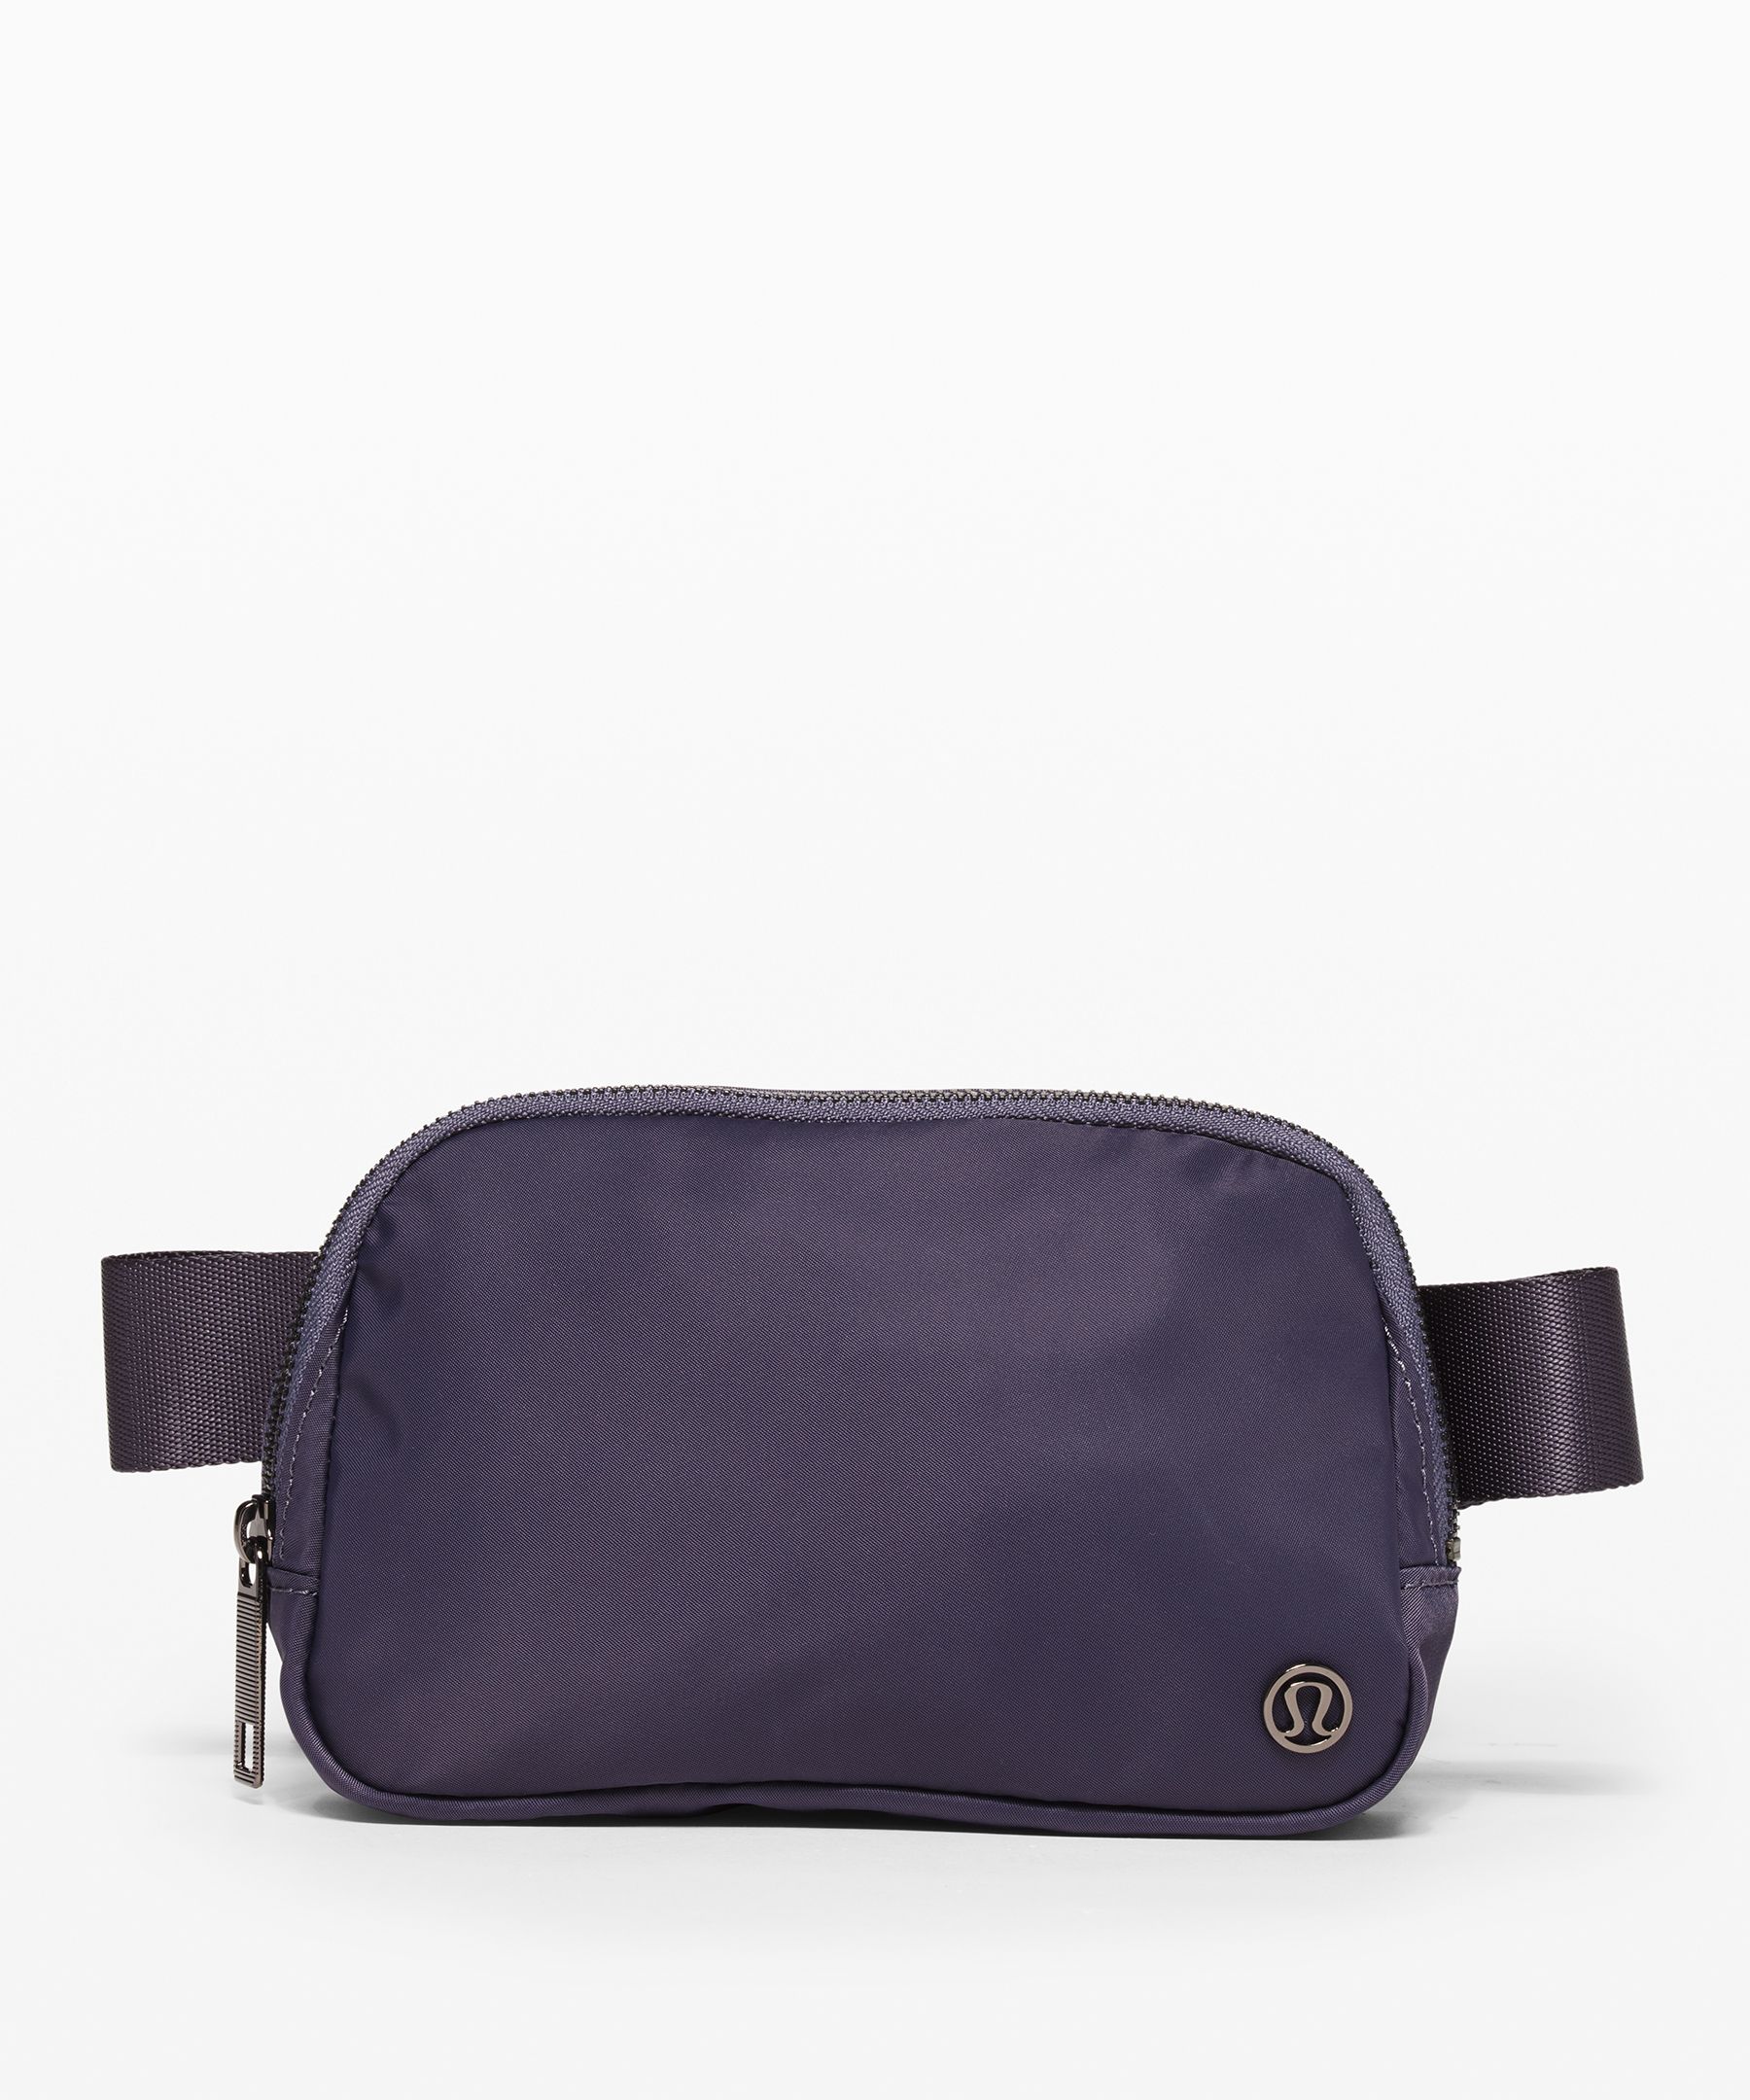 purple lululemon bag